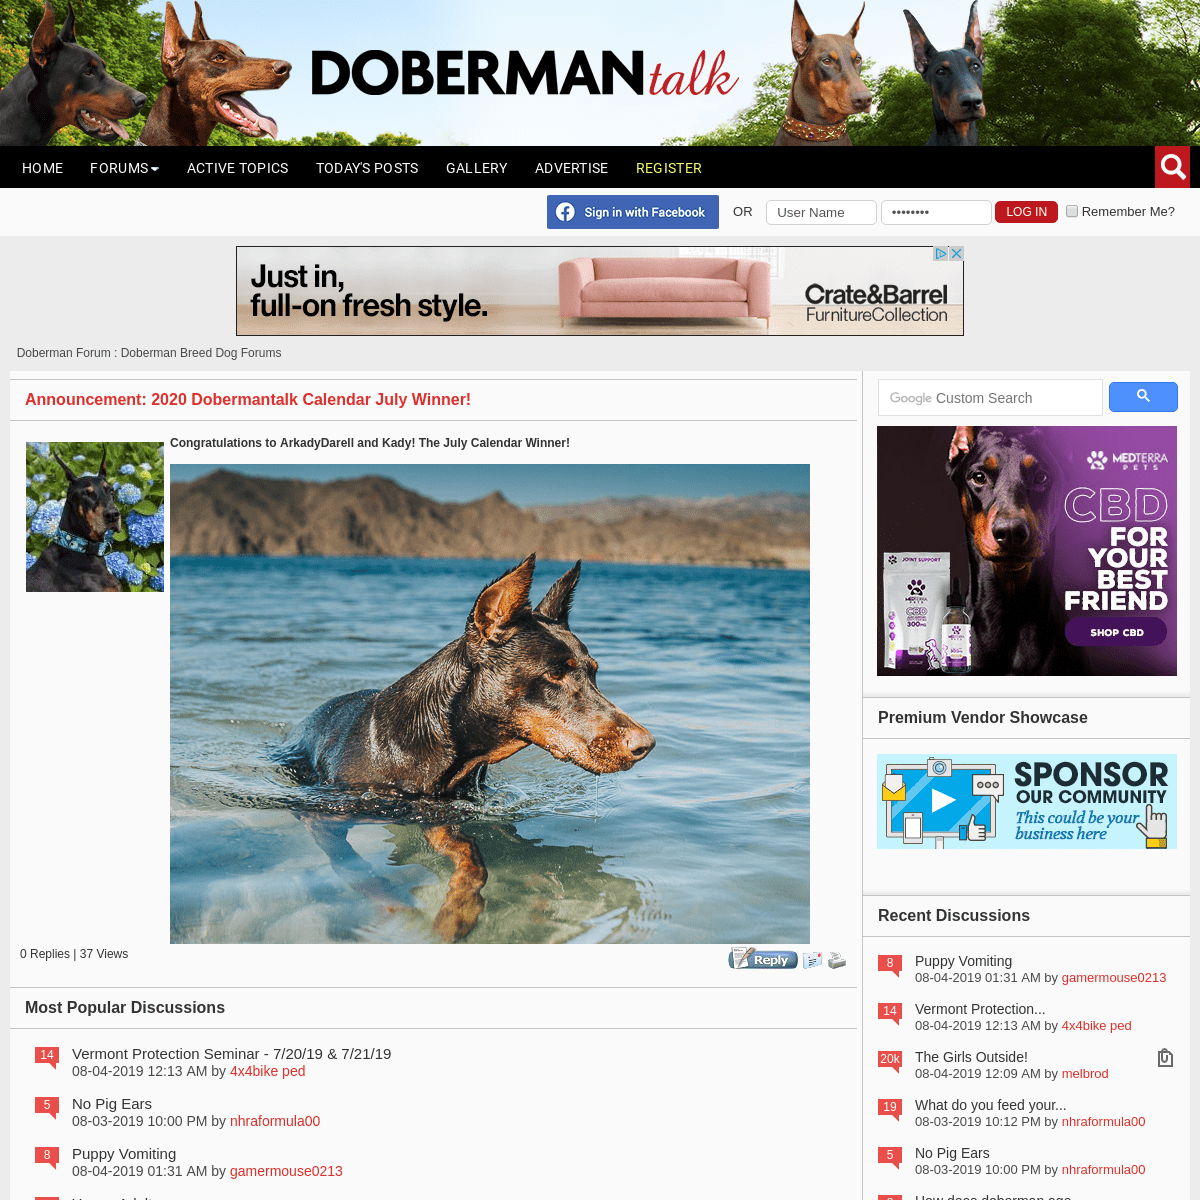 Doberman Forum : Doberman Breed Dog Forums 